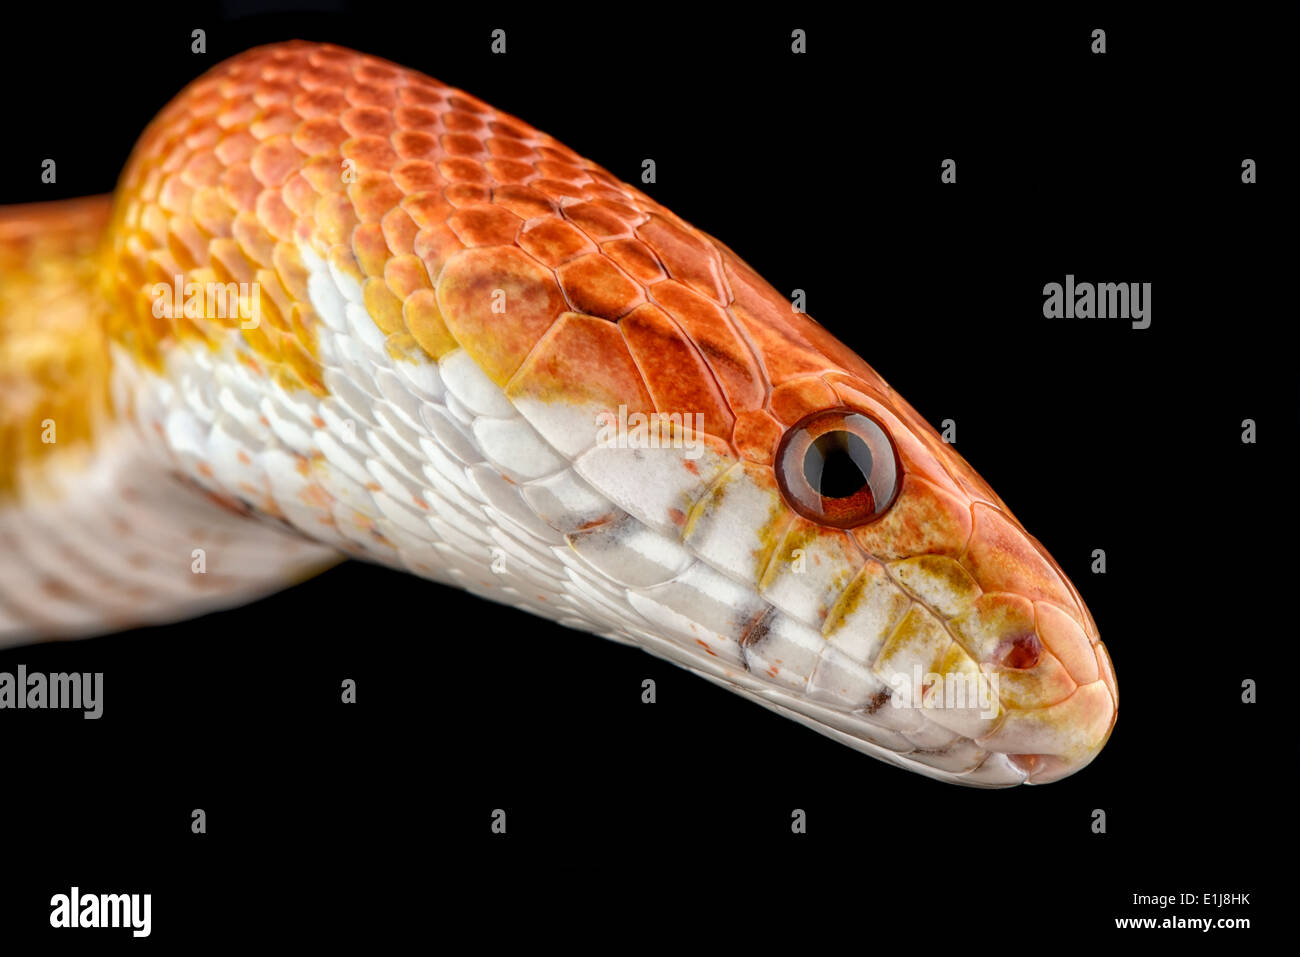 Head of corn snake, Pantherophis guttatus Stock Photo